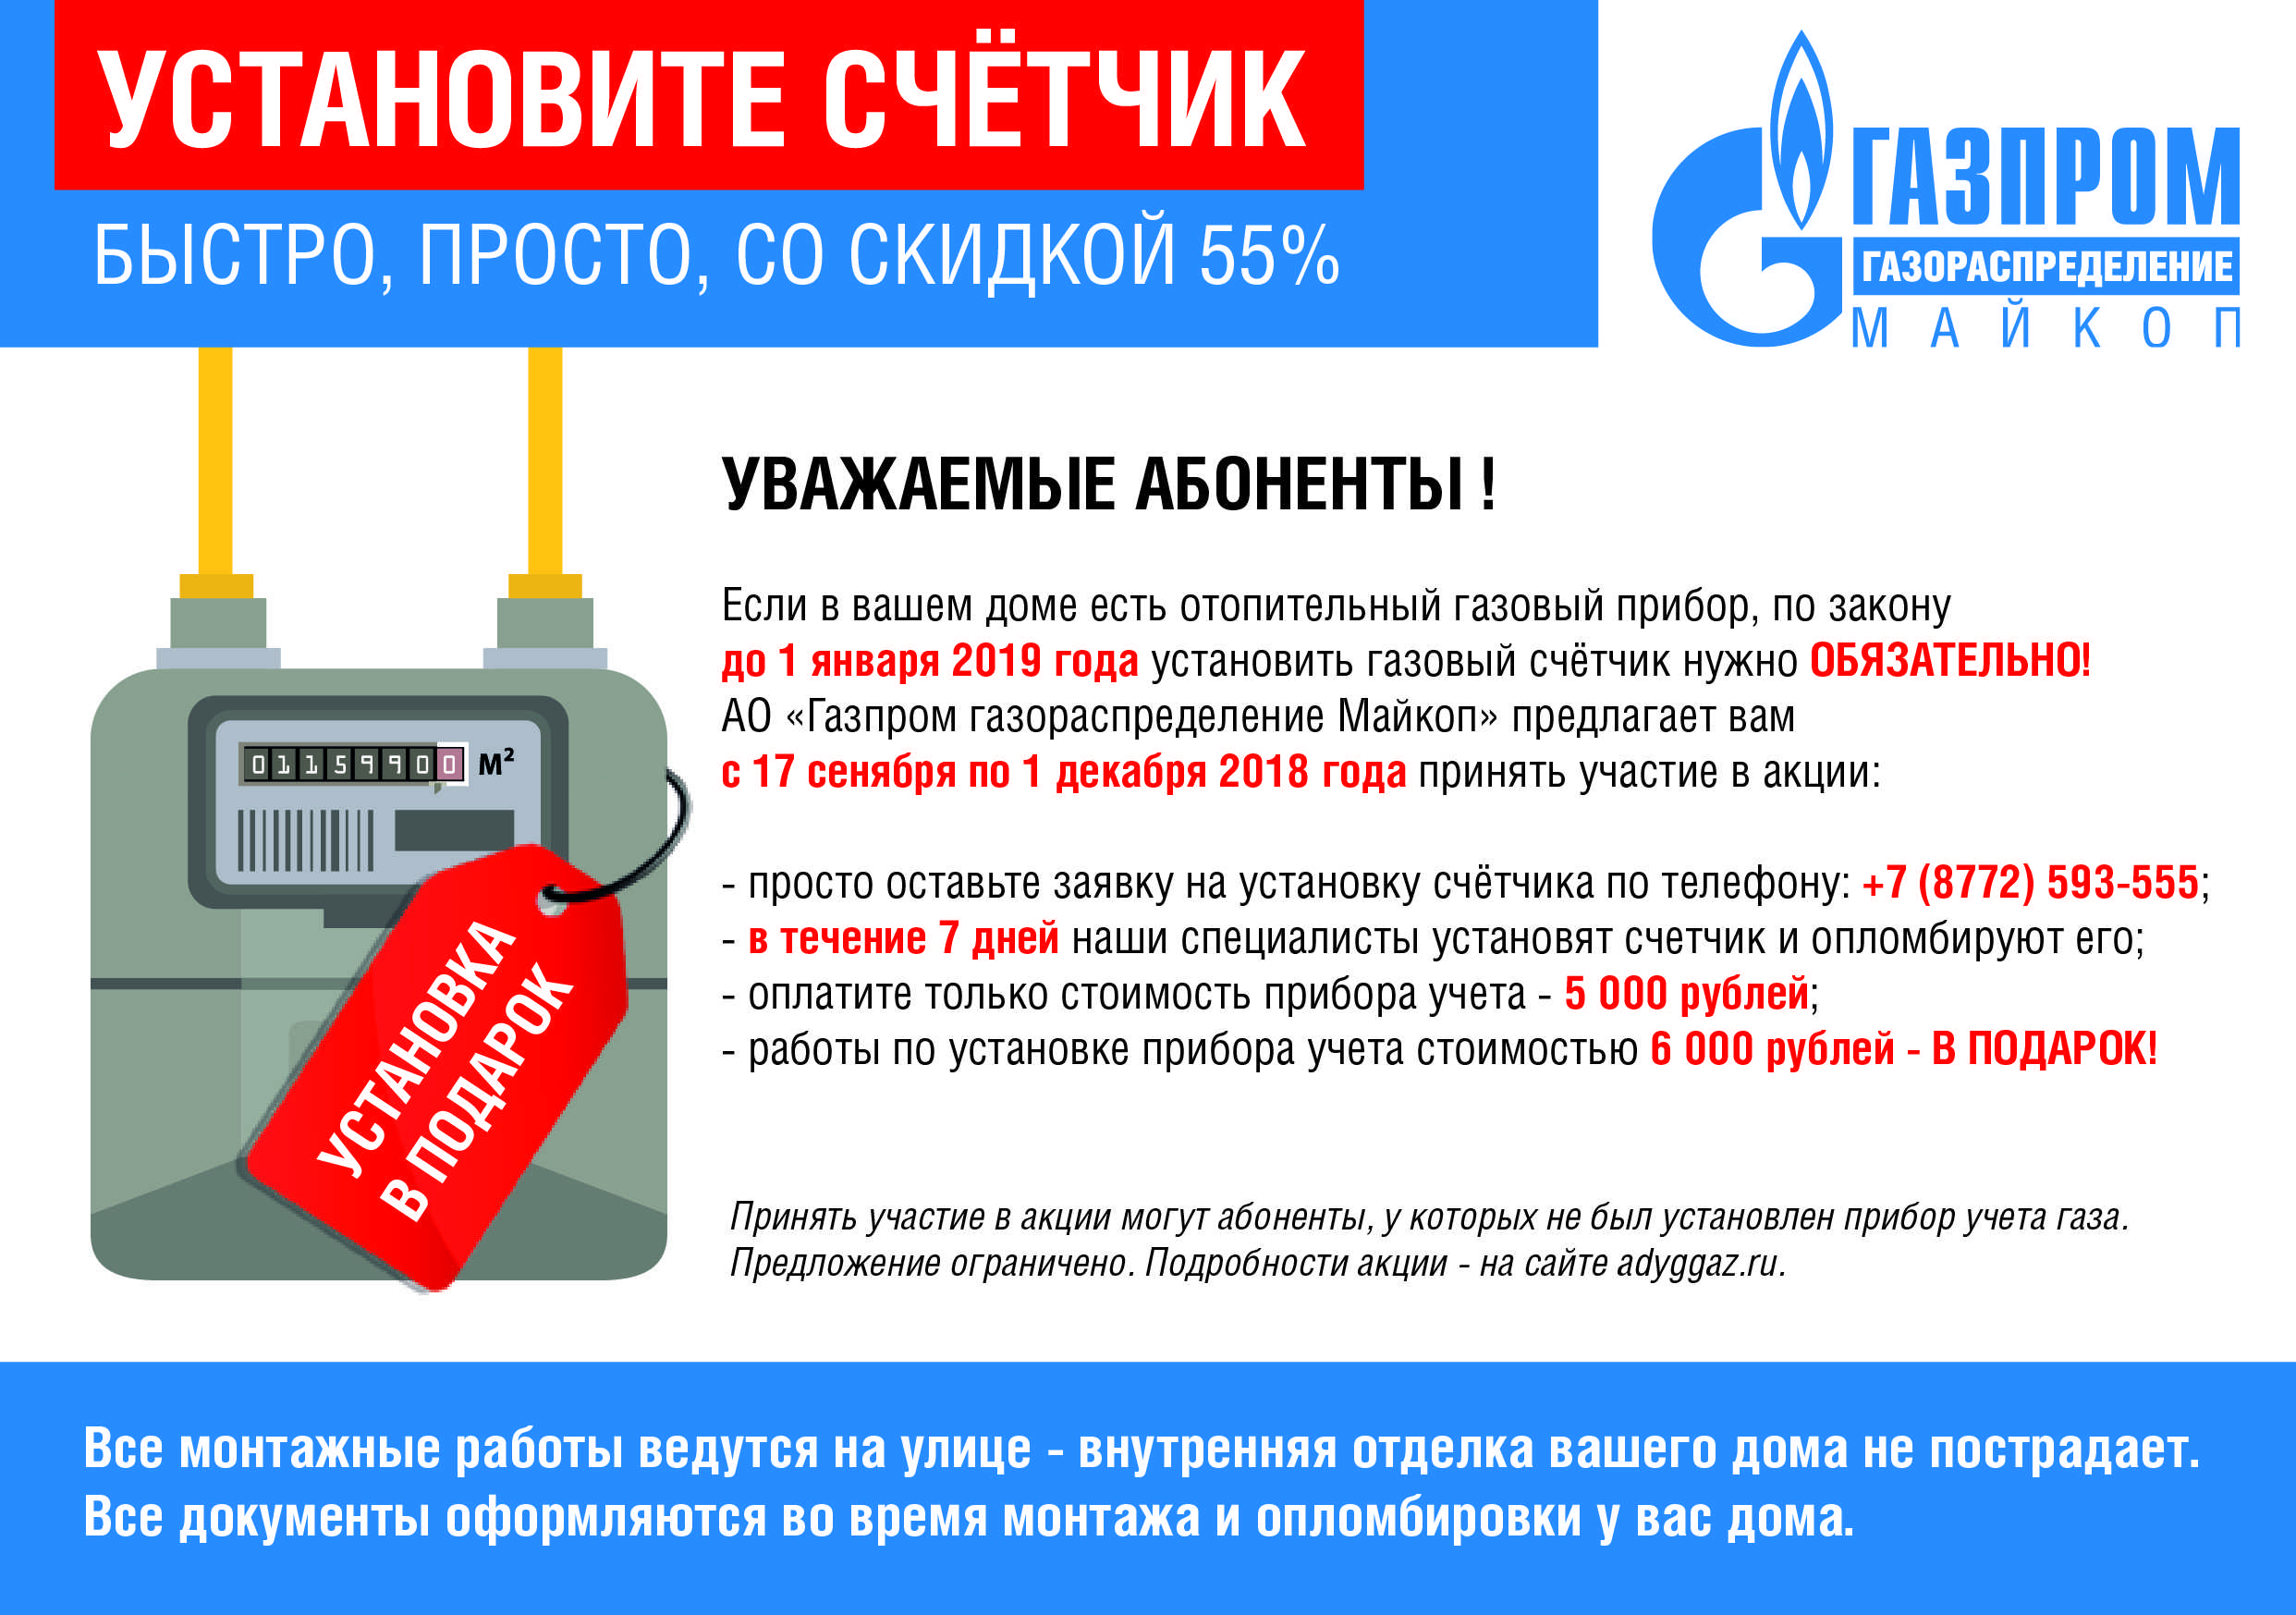 Какова величина штрафа за самовольную замену газовой колонки в квартире. - вопрос №8060219. 9111.ru